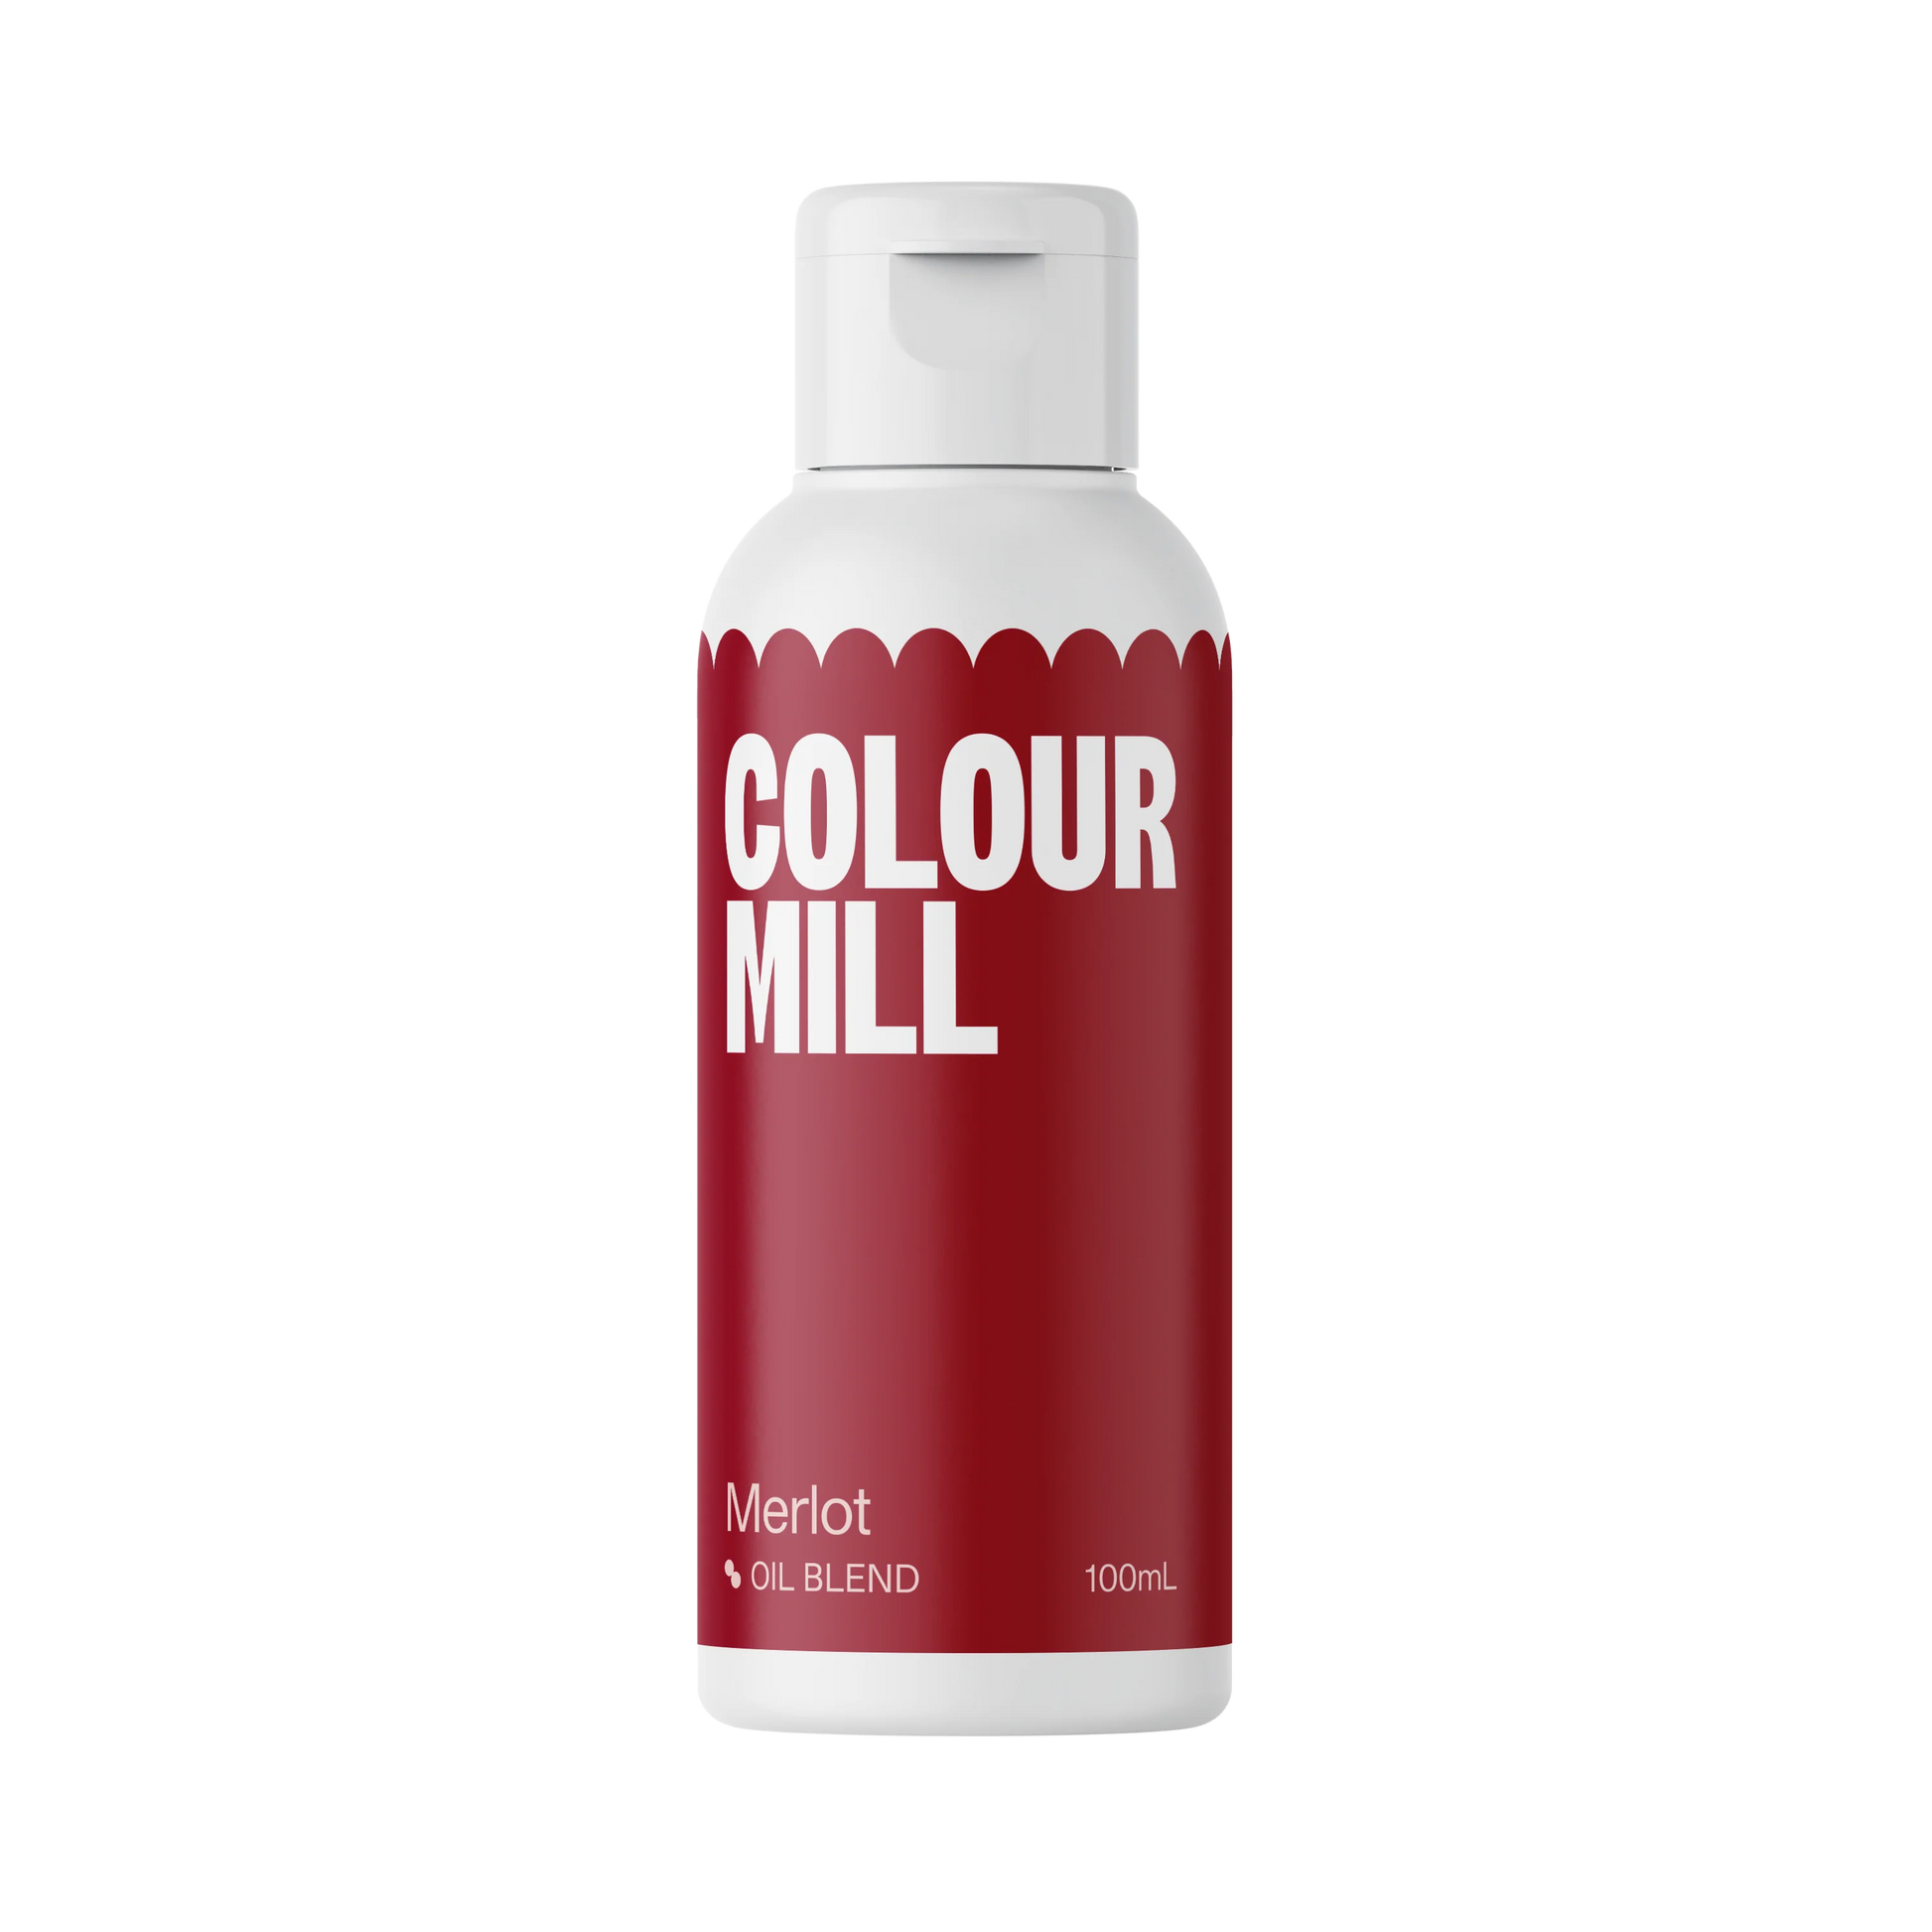 Merlot - Oil Based Colouring 20ml (Colour Mill) - Premium Colour Mill from Colour Mill - Just $7.95! Shop now at O'Khach Baking Supplies